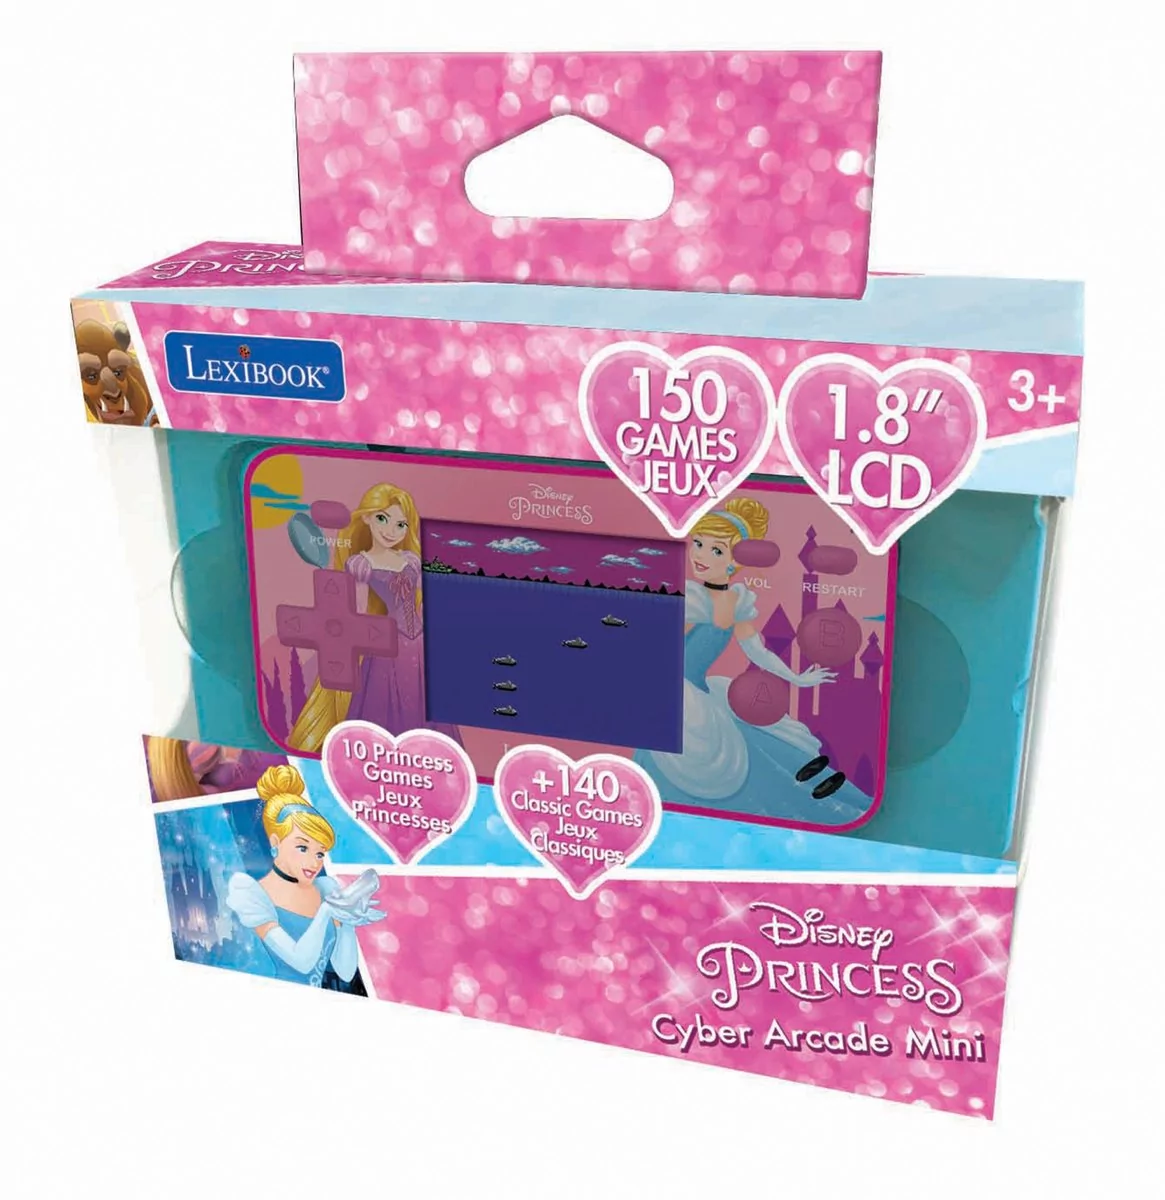 Lexibook, Konsola Podręczna Cyber Arcade  Pocket Disney Princess Ekran 1,8   150 Gier W Tym 10 Z Księżniczkami